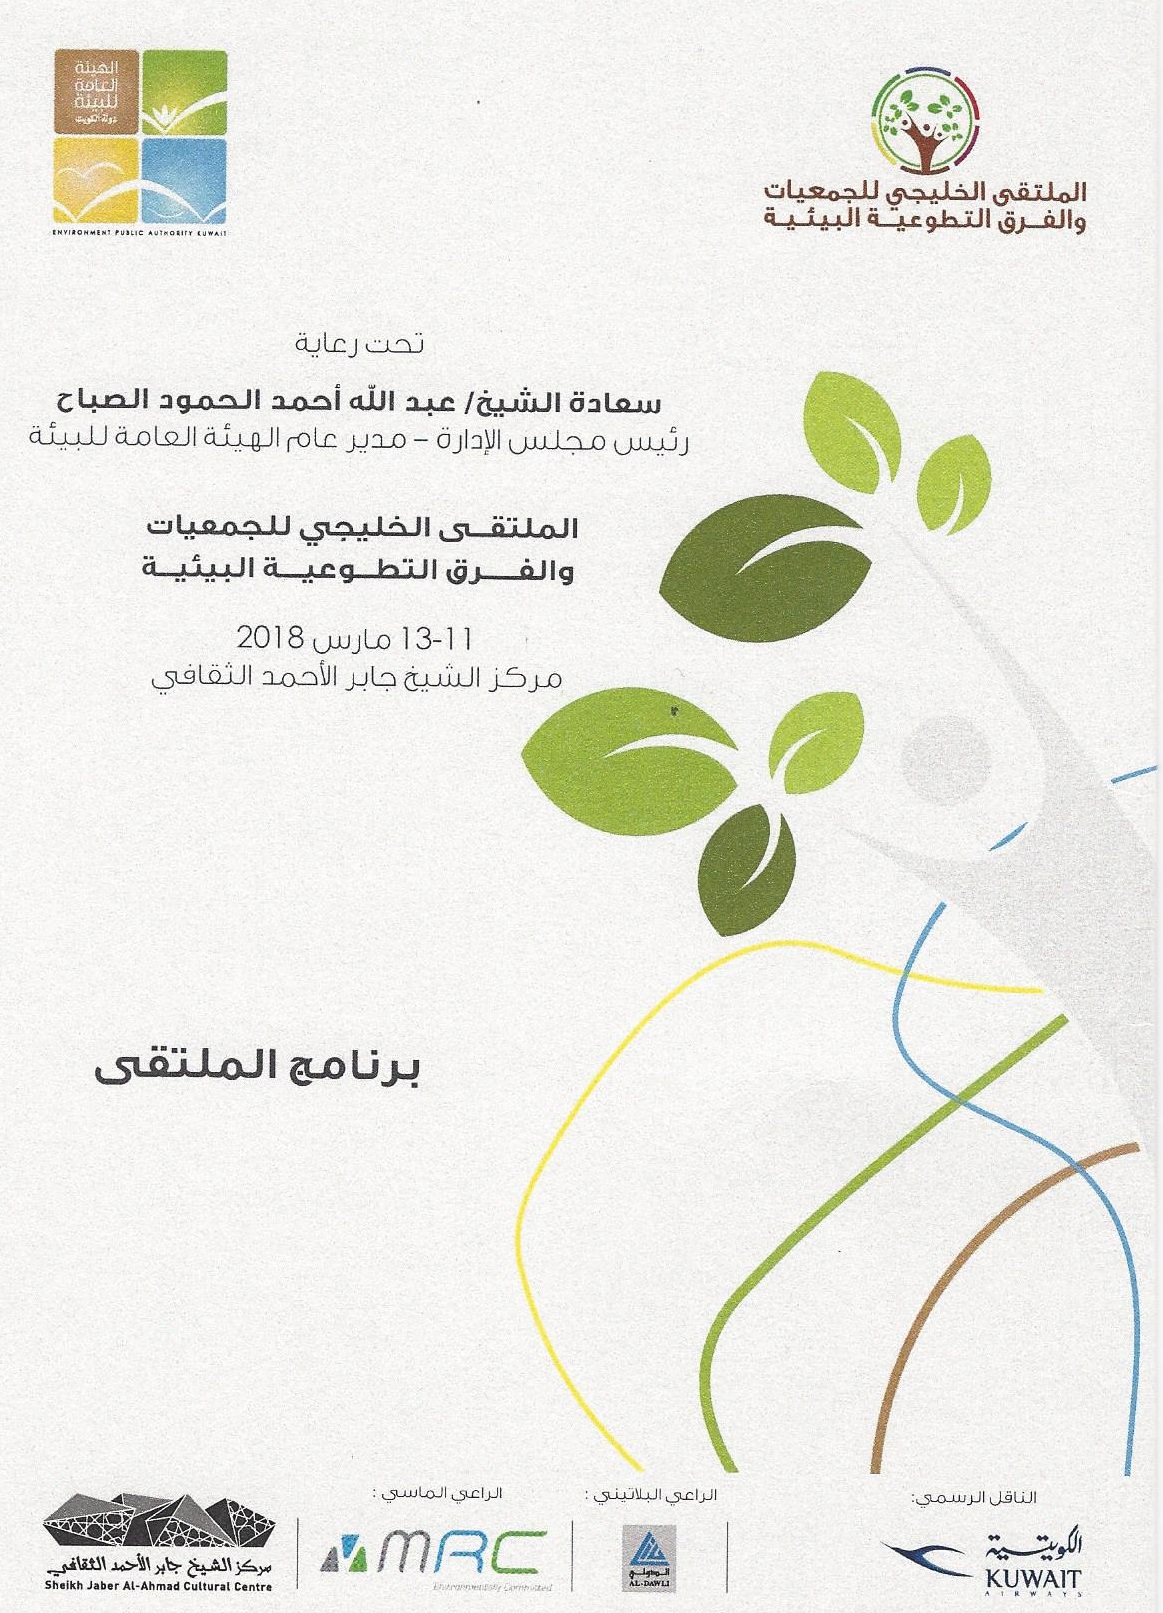 شركة المعادن والصناعات التحويلية الراعي الماسي لـ الملتقى الخليجي للجمعيات والفرق التطوعية البيئية